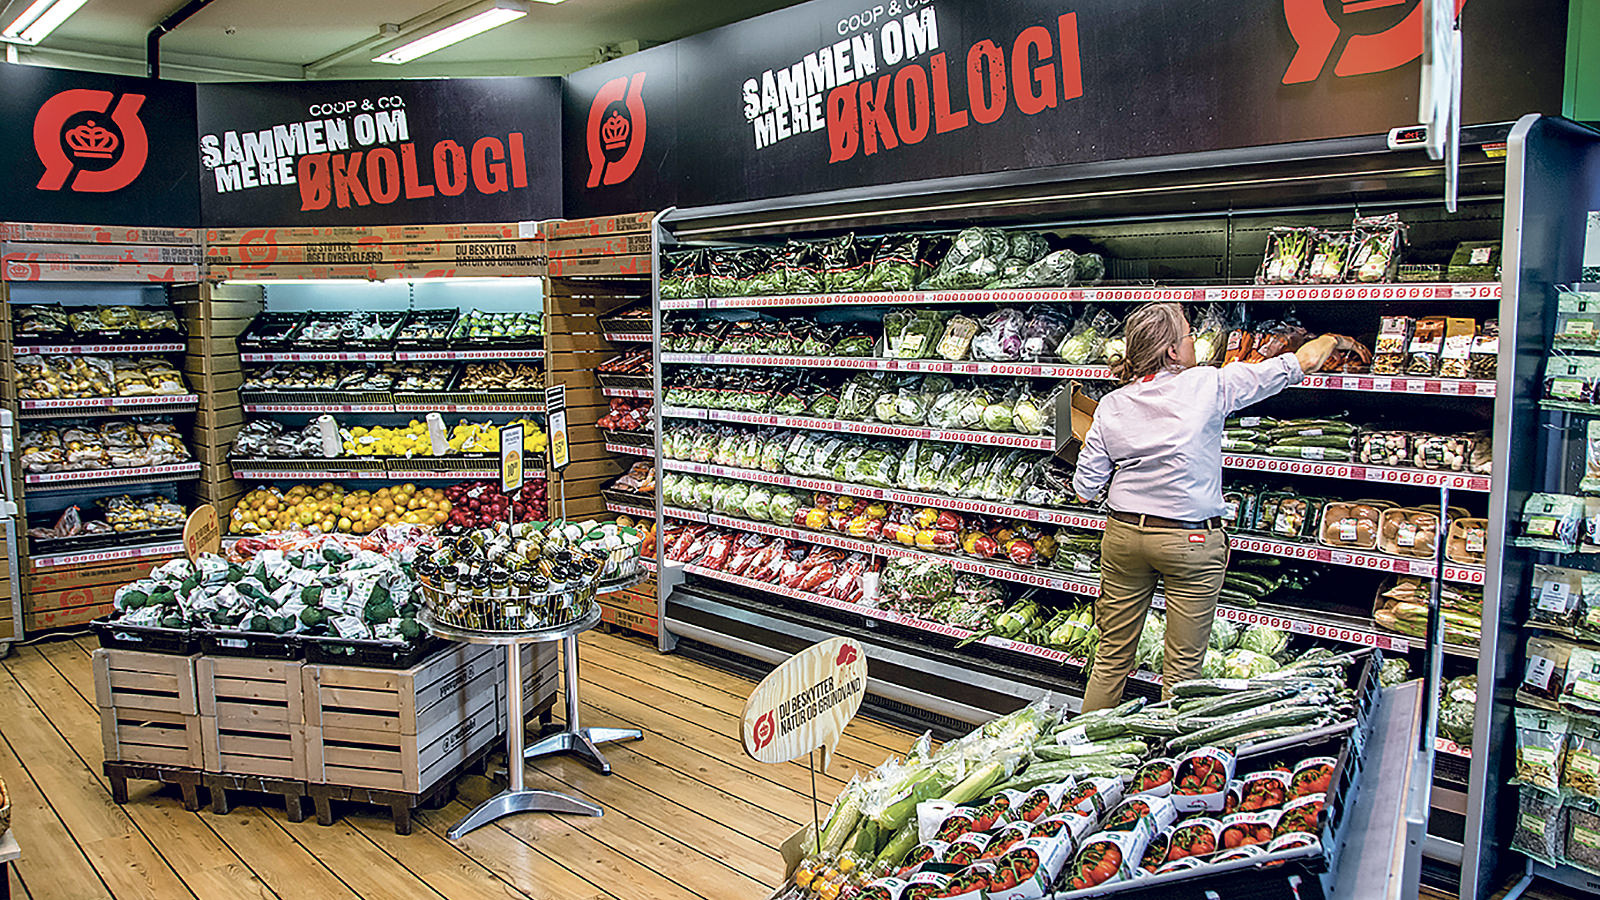 En medarbejder i SuperBrugsen er ved at lægge grønsager på plads i frugt- og grøntafdelingen med økologiske varer.